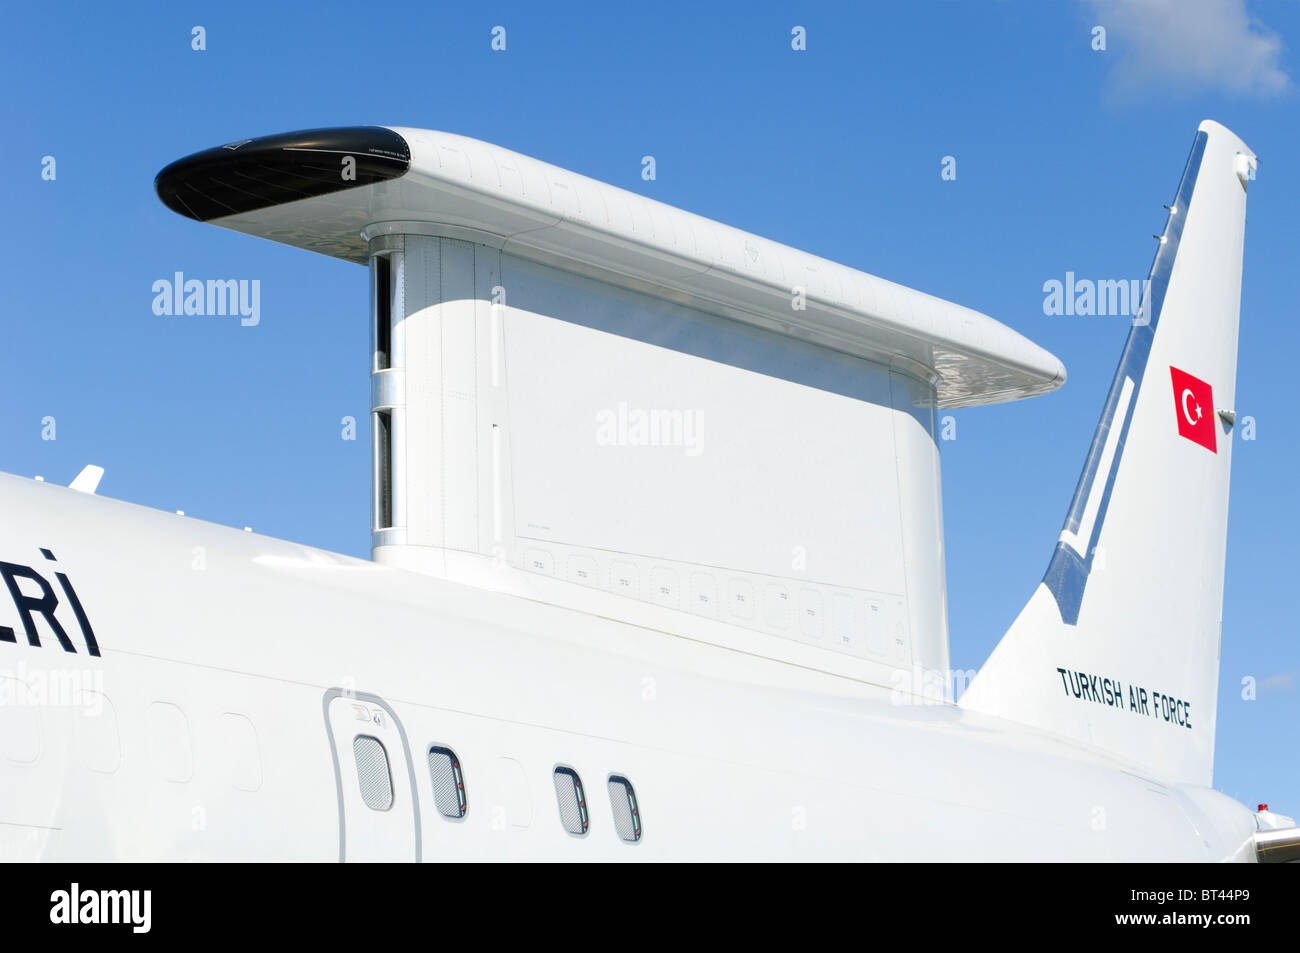 Radar MESA carter sur un Boeing 737-7ES Peace Eagle exploités par les forces aériennes turques en exposition statique au Salon aéronautique de Farnborough. Banque D'Images